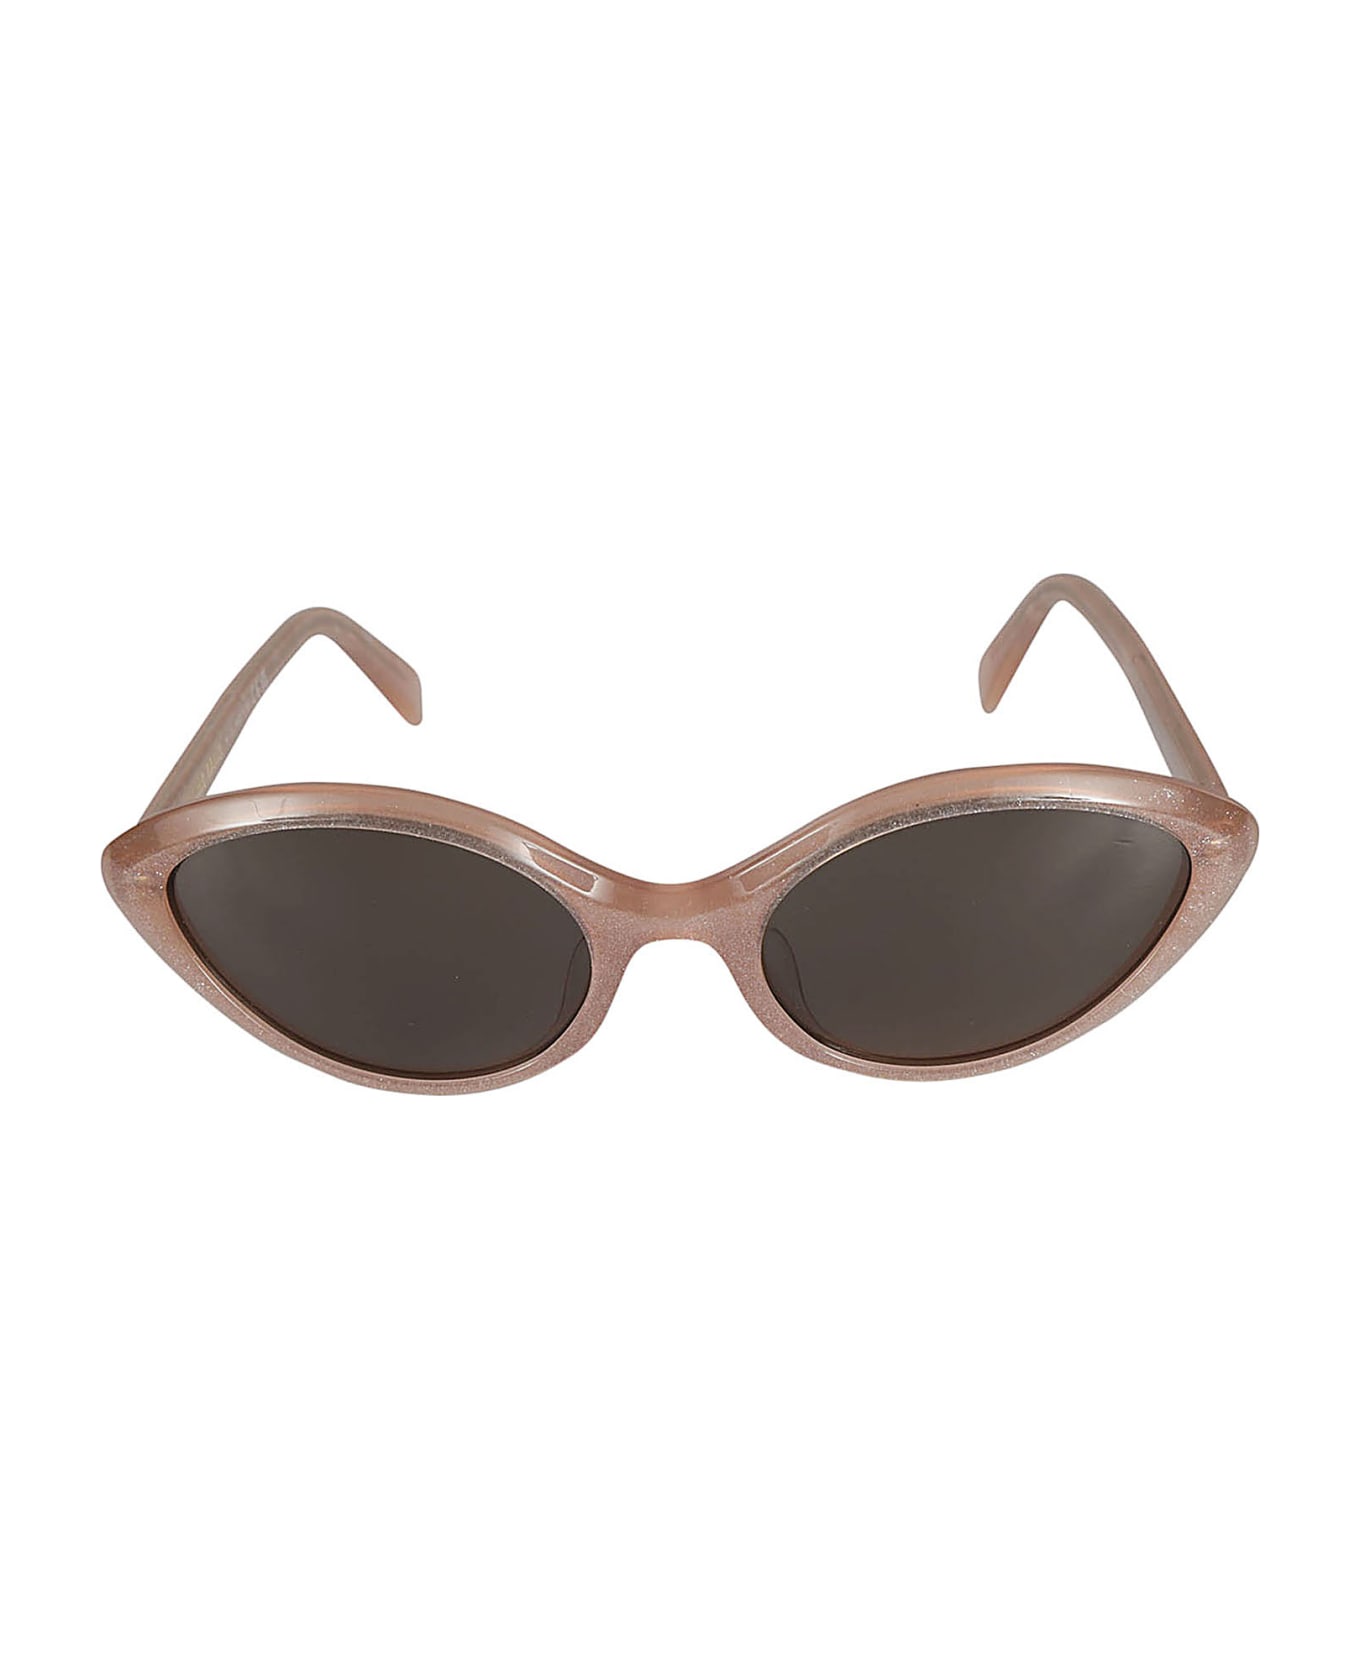 Celine Embellished Cat-eye Sunglasses - 74n